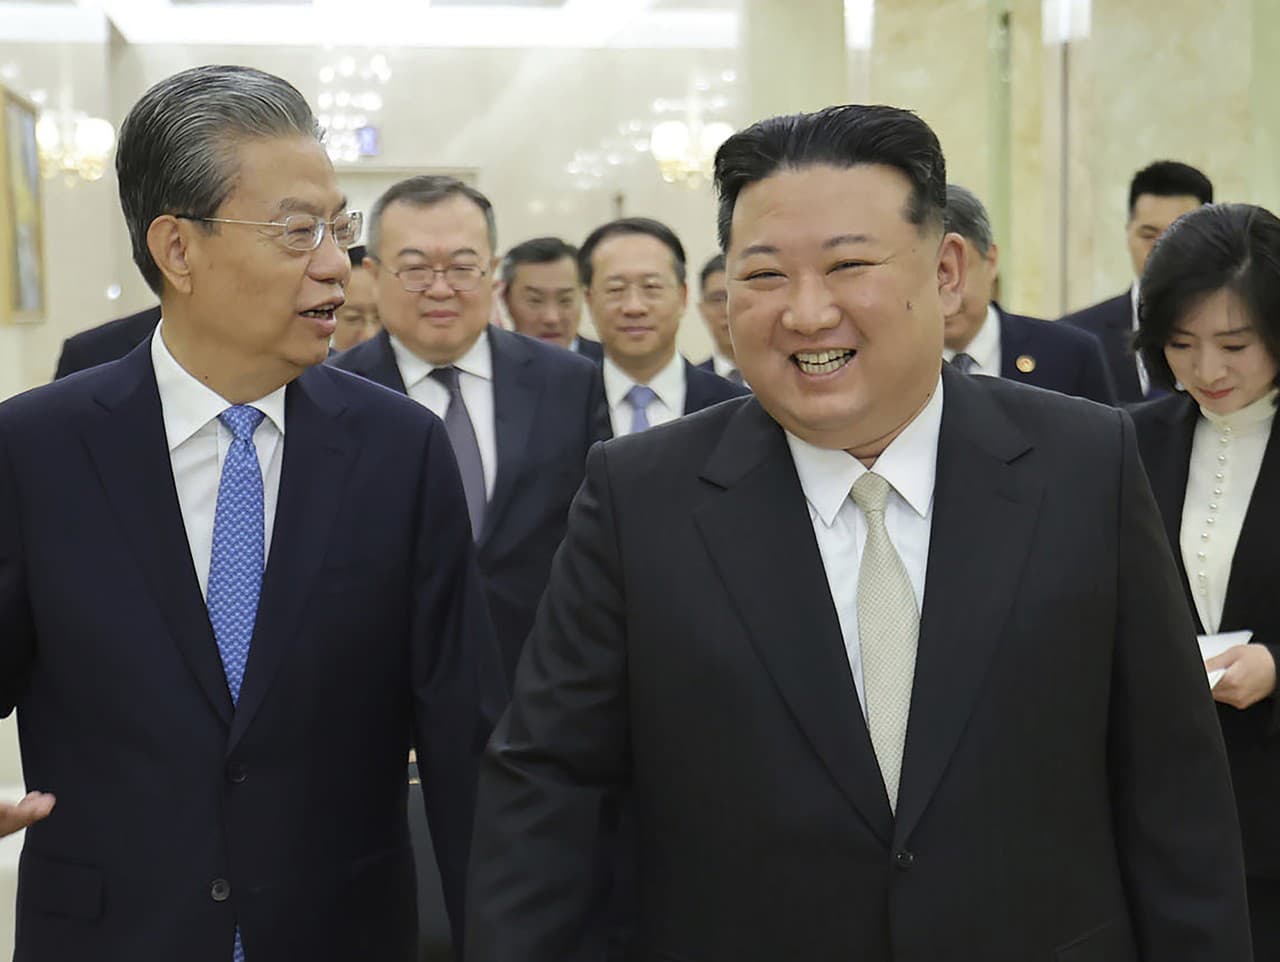 Severokórejský vodca Kim Čong-un sa stretol s Zhao Leji, predsedom Národného ľudového kongresu Číny